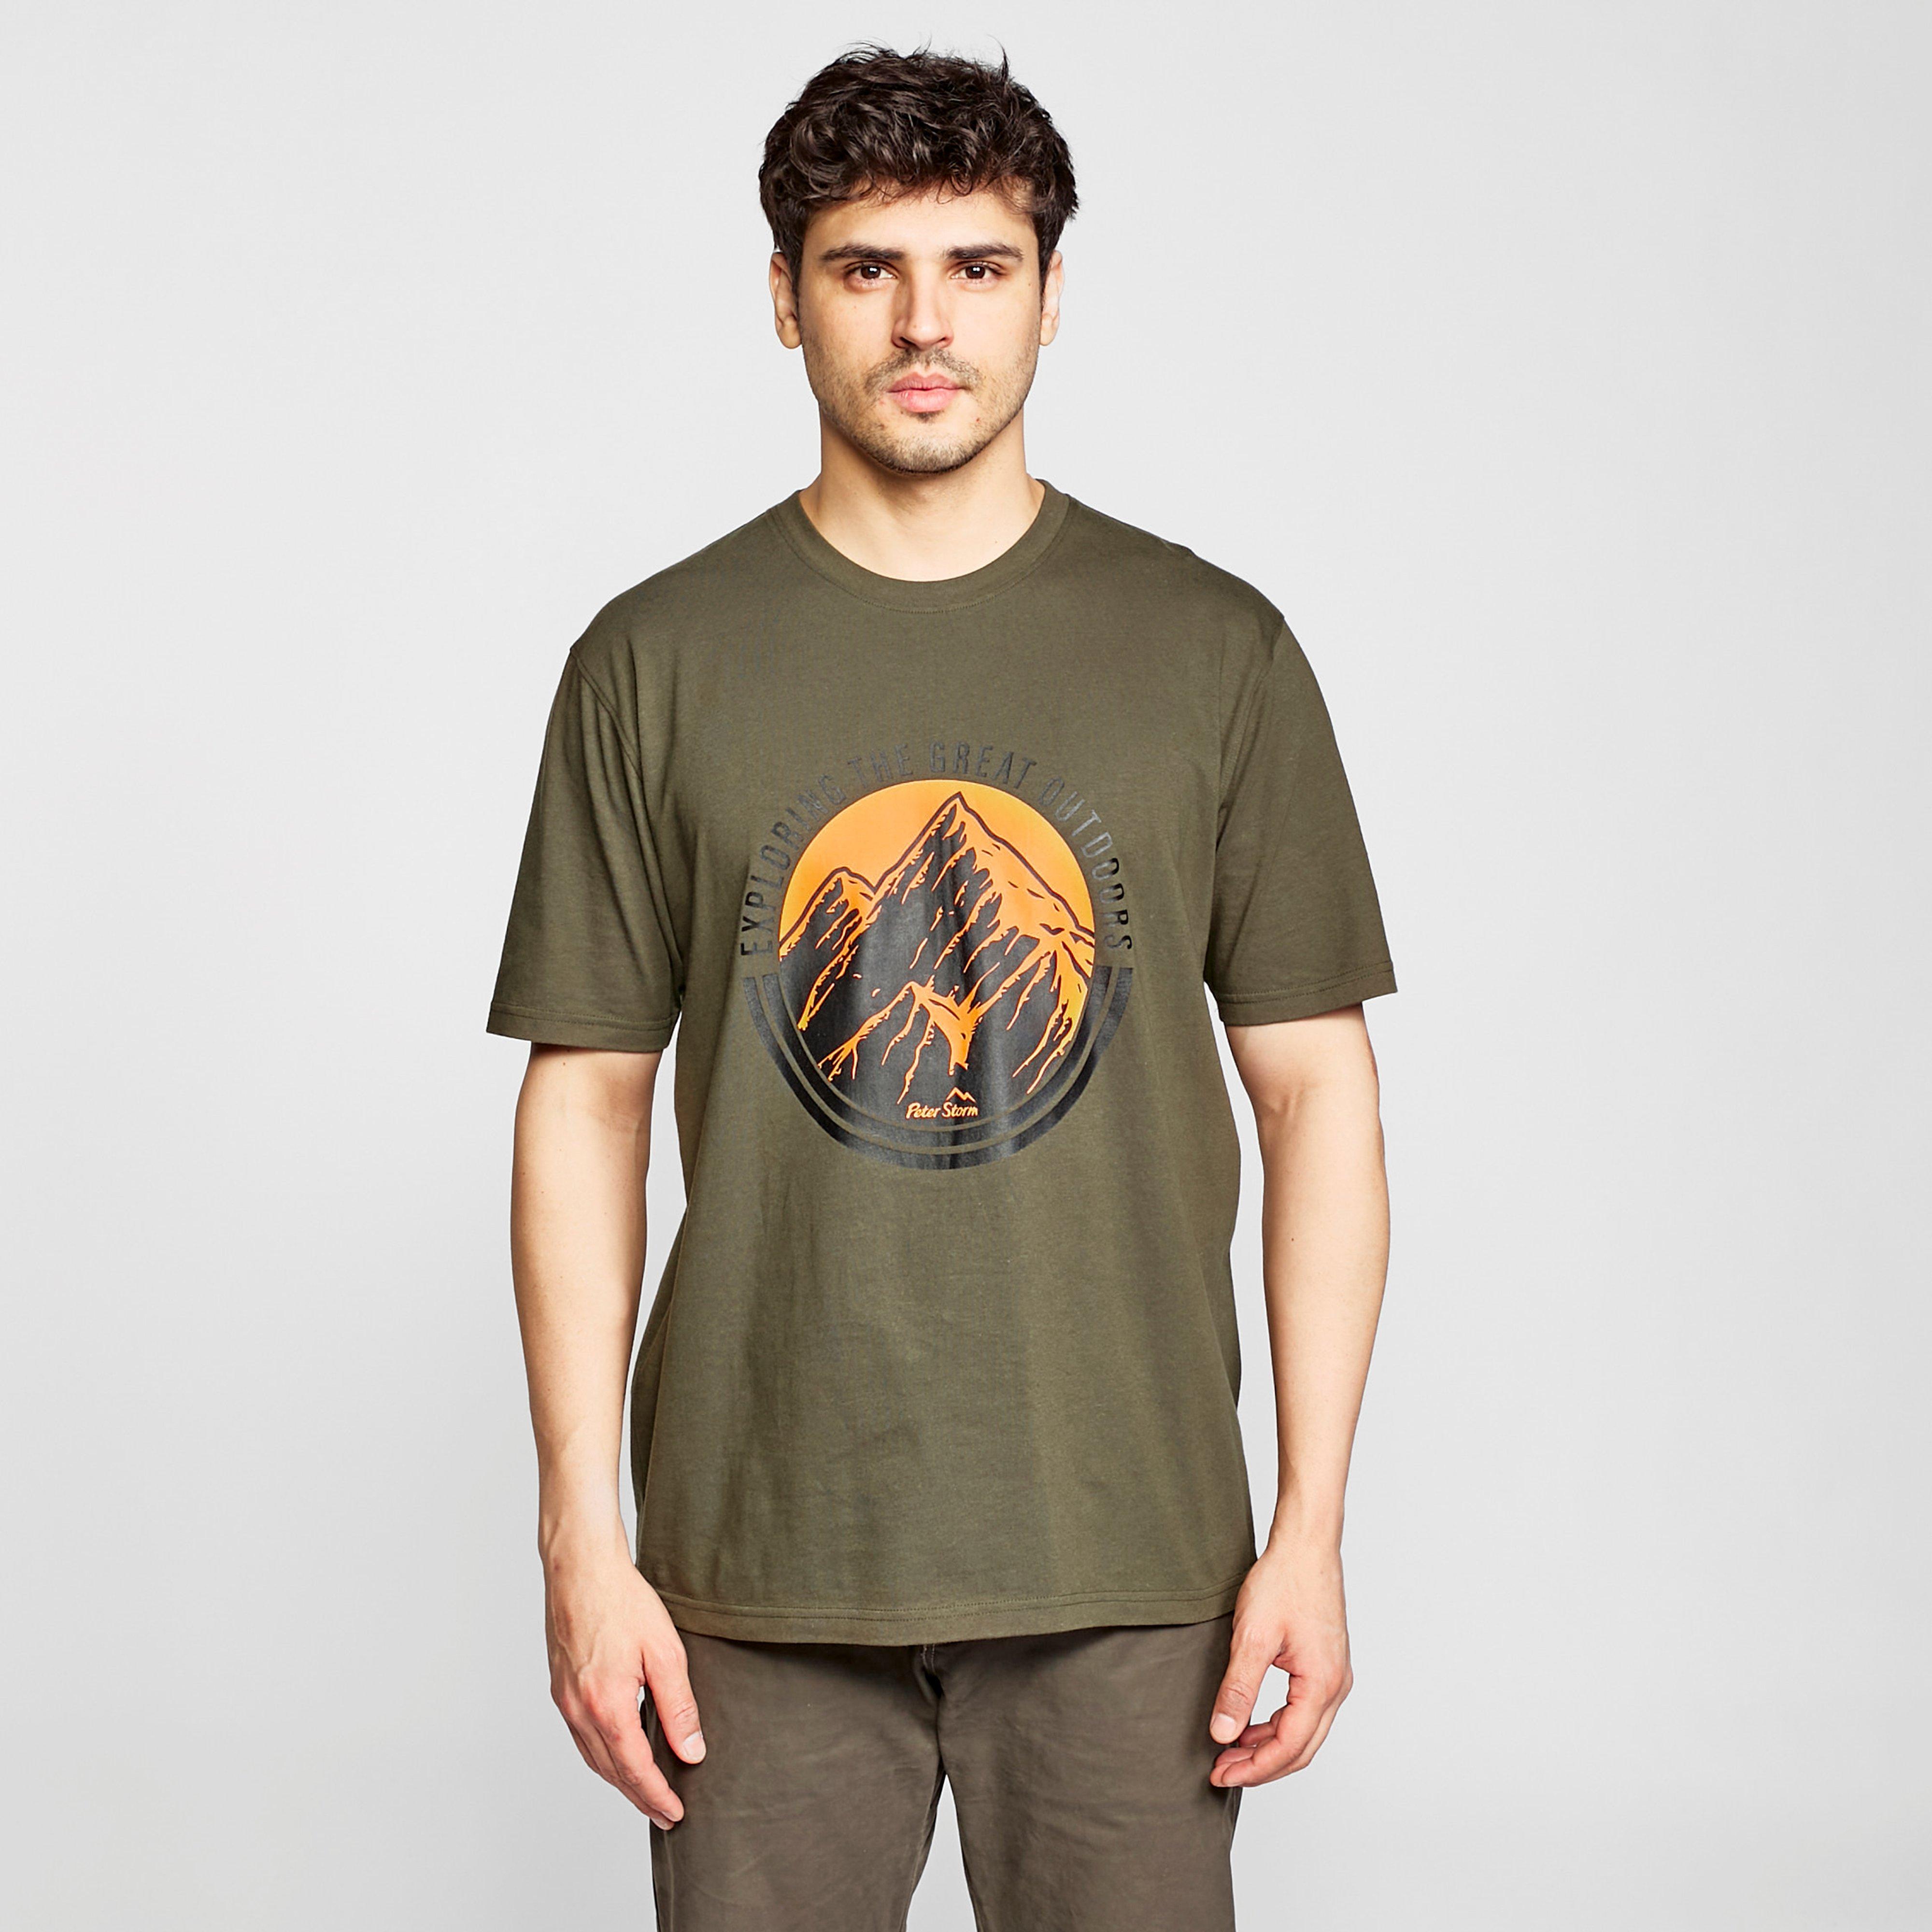 Image of Peter Storm Men's Great Outdoors T-Shirt - Khaki/Khk, Khaki/KHK